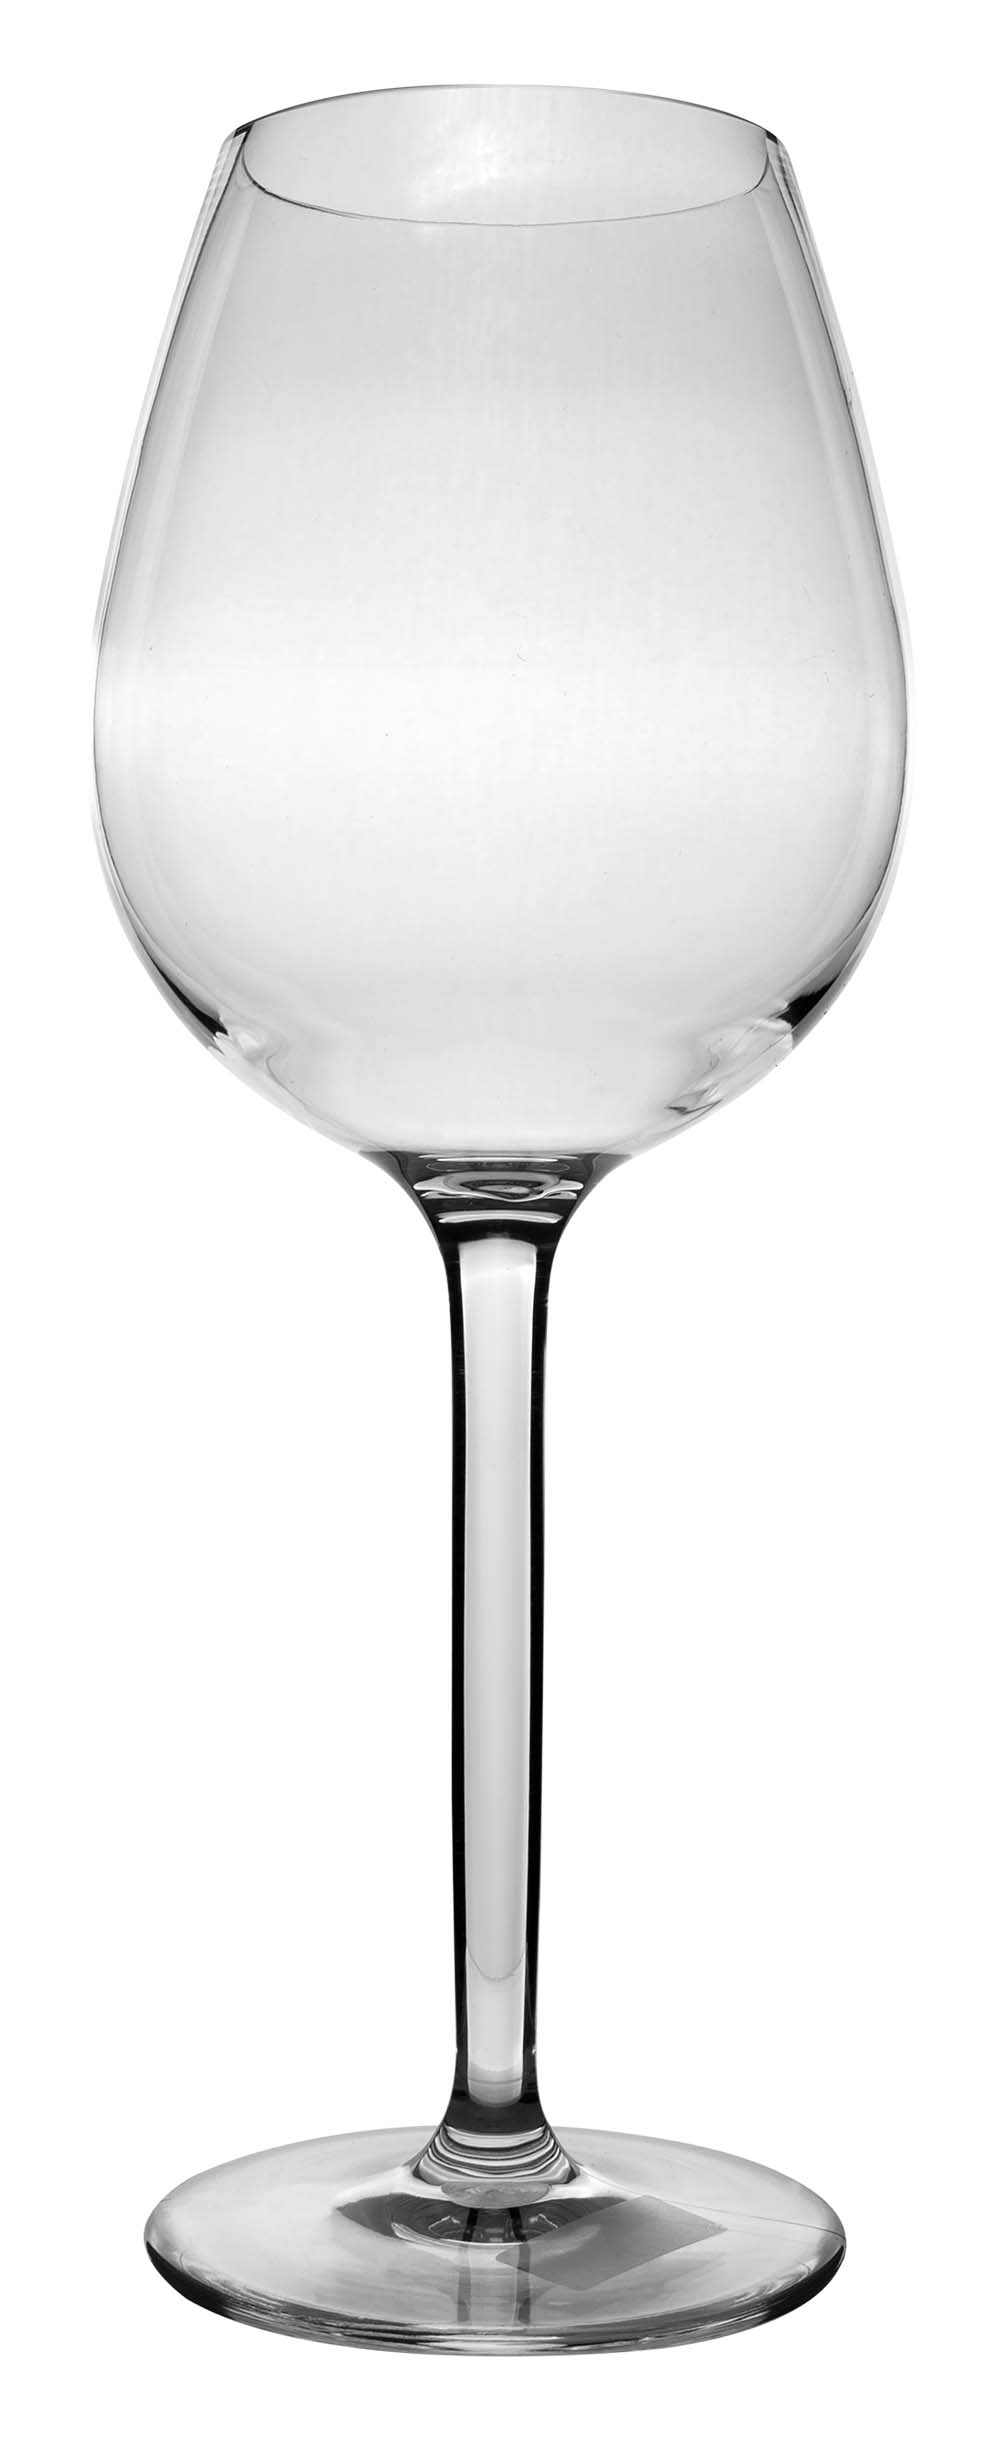 6101466 Una copa de vino tinto de lujo casi irrompible con un diseño redondo y elegante. Apto para lavavajillas, ligero y aún mejor resistente a los arañazos. Fabricado en tritán resistente. Un juego de 2 vasos. Los vasos no contienen BPA.